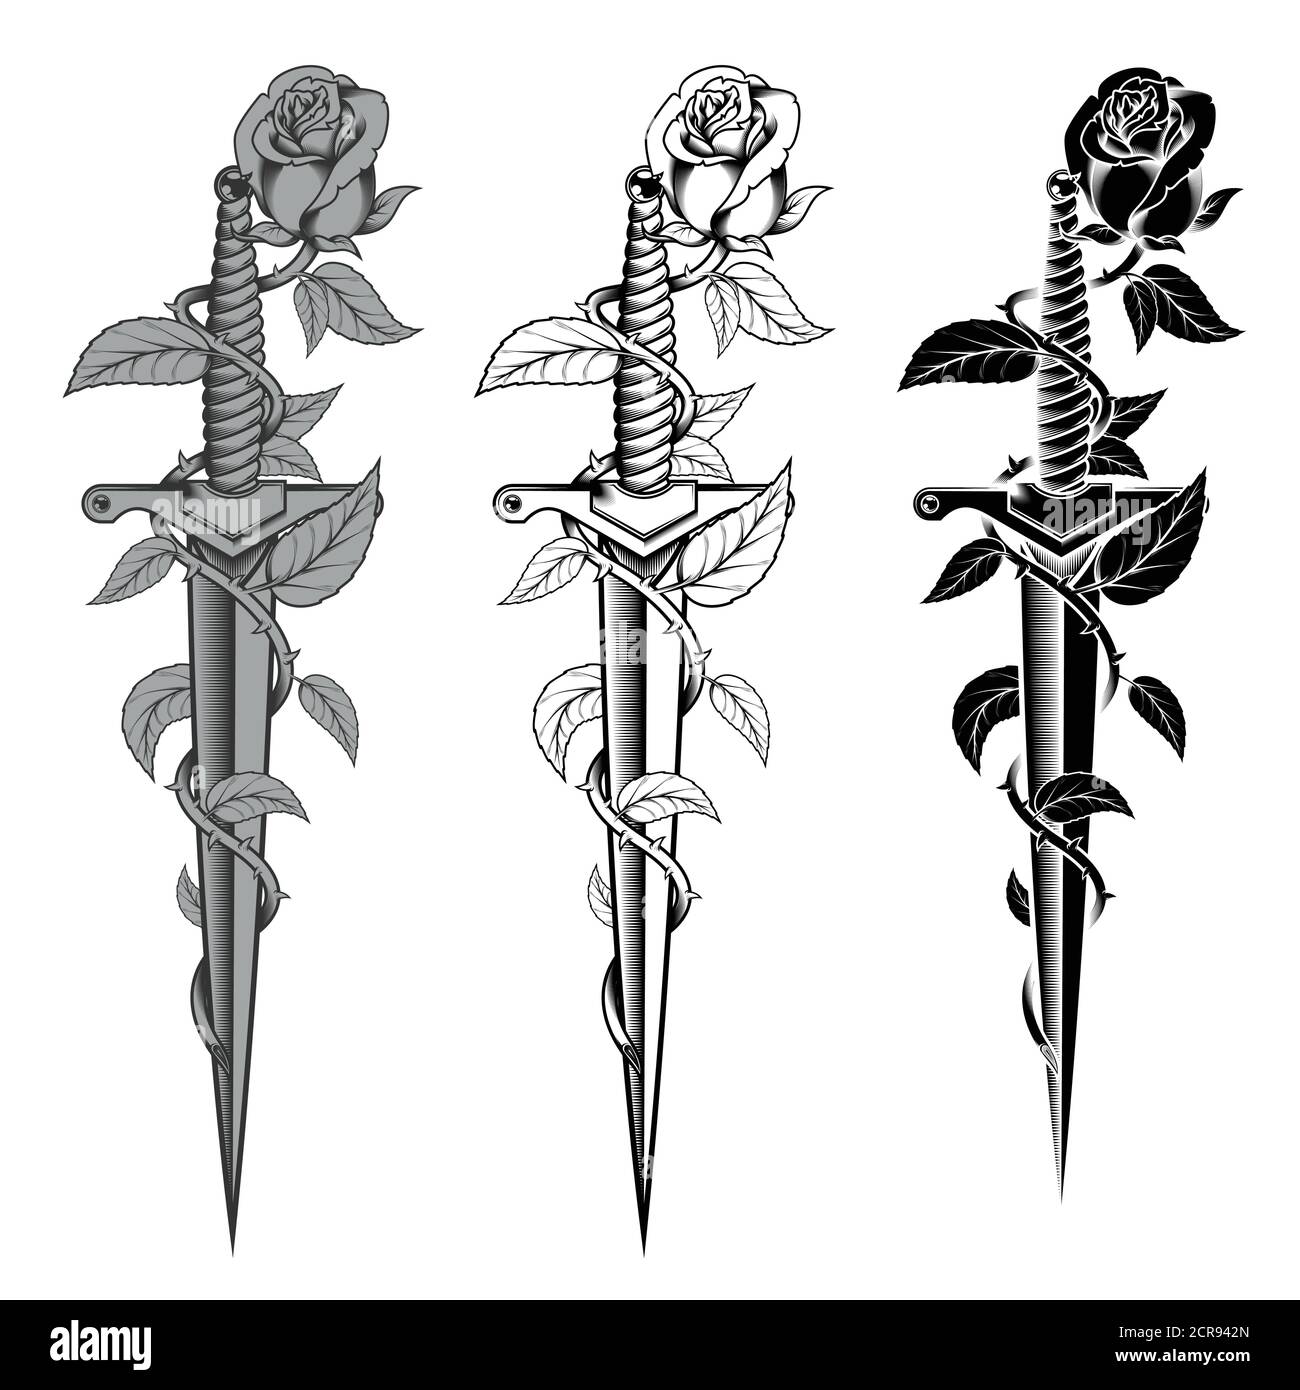 motif de roses vectorielles avec des épines enveloppant un poignard, vecteur de style noir et blanc Illustration de Vecteur